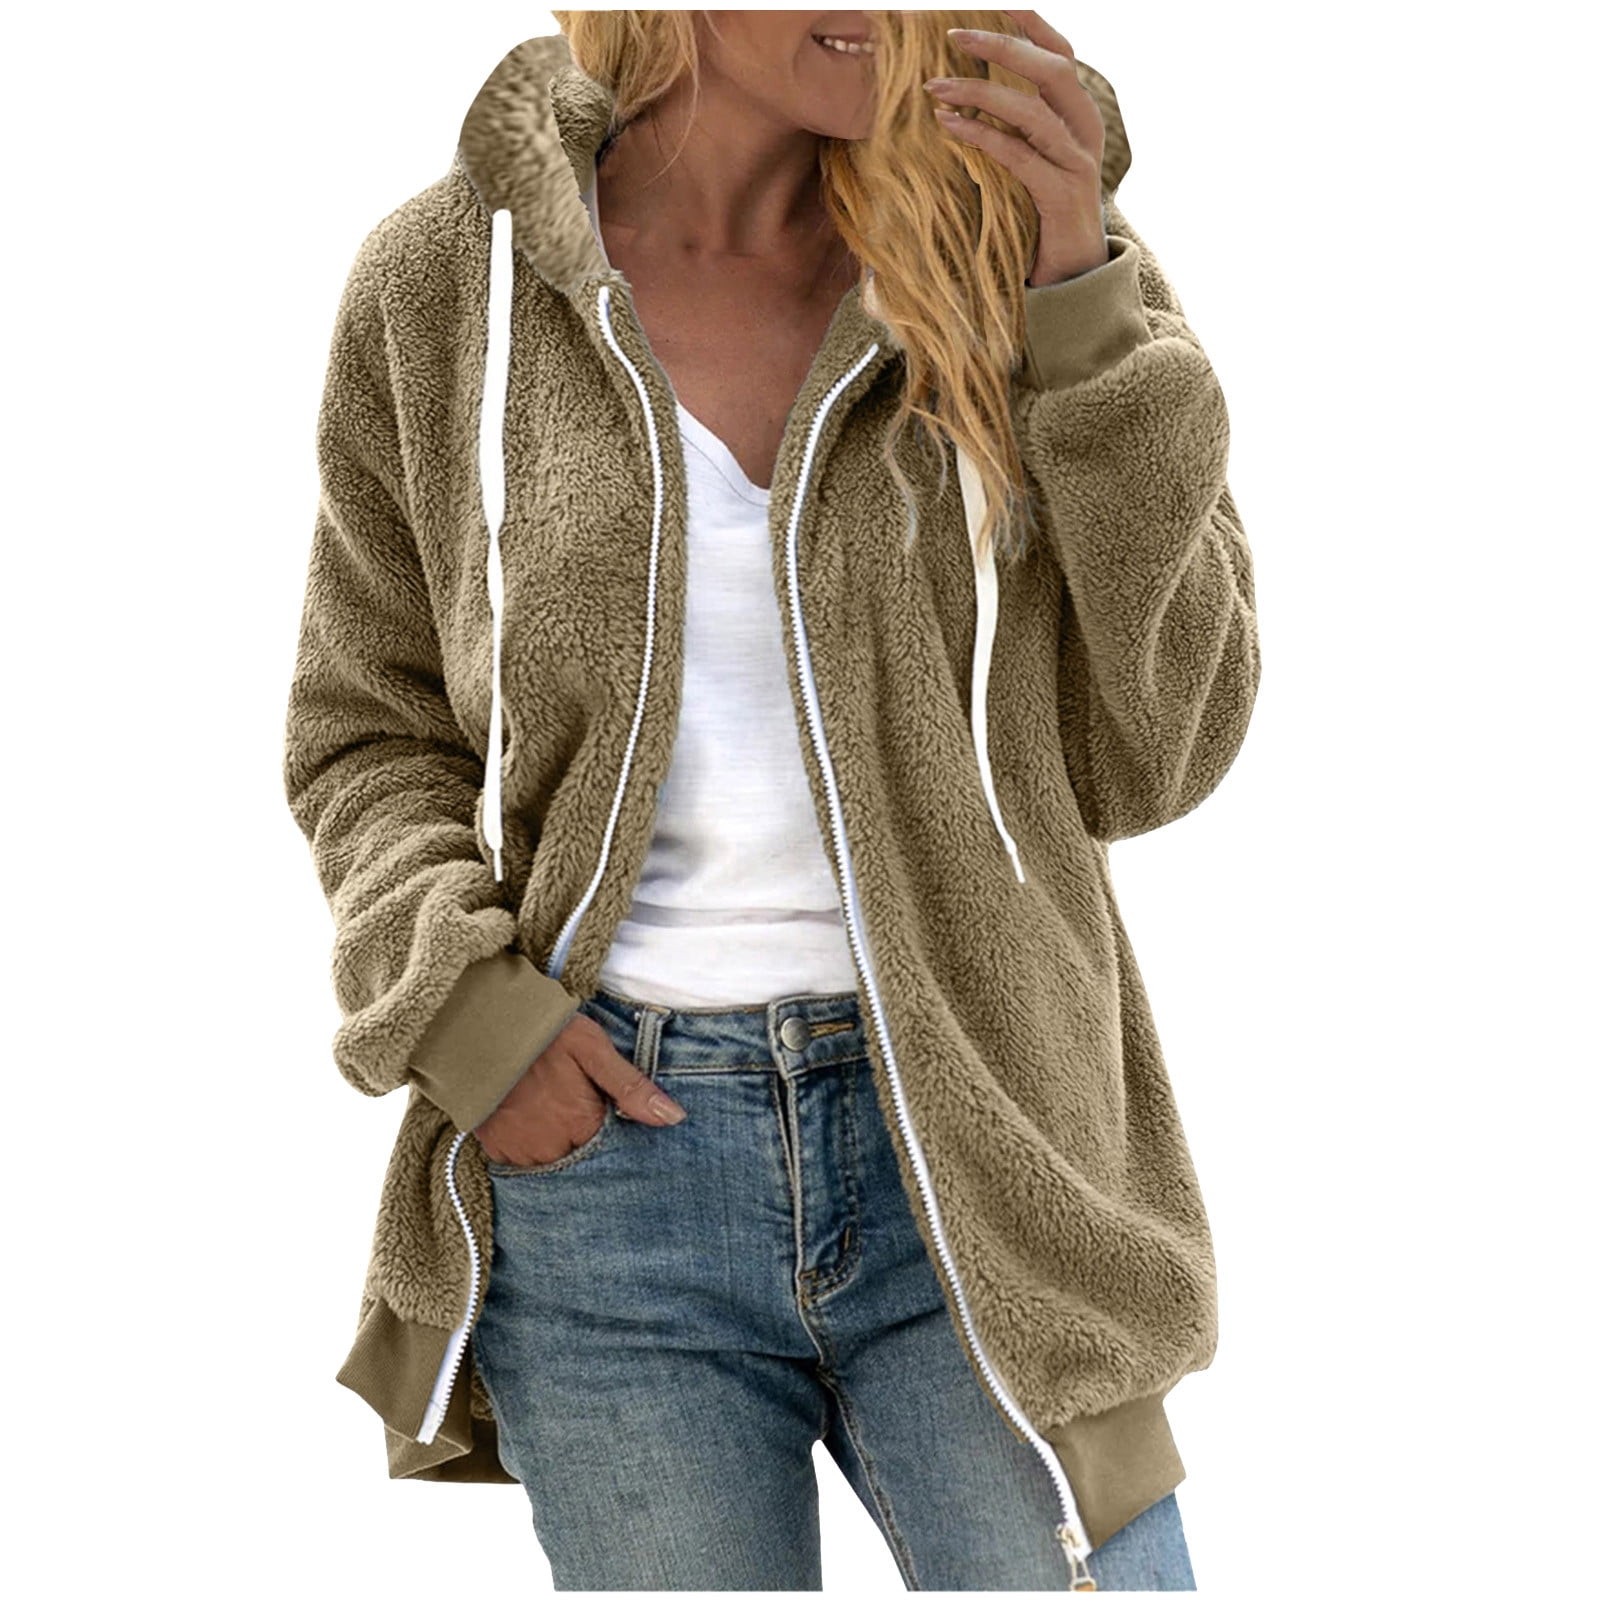 Oversized Sherpa Hoodies, Women's Colorblock Faux Shearling Jacket Full ...